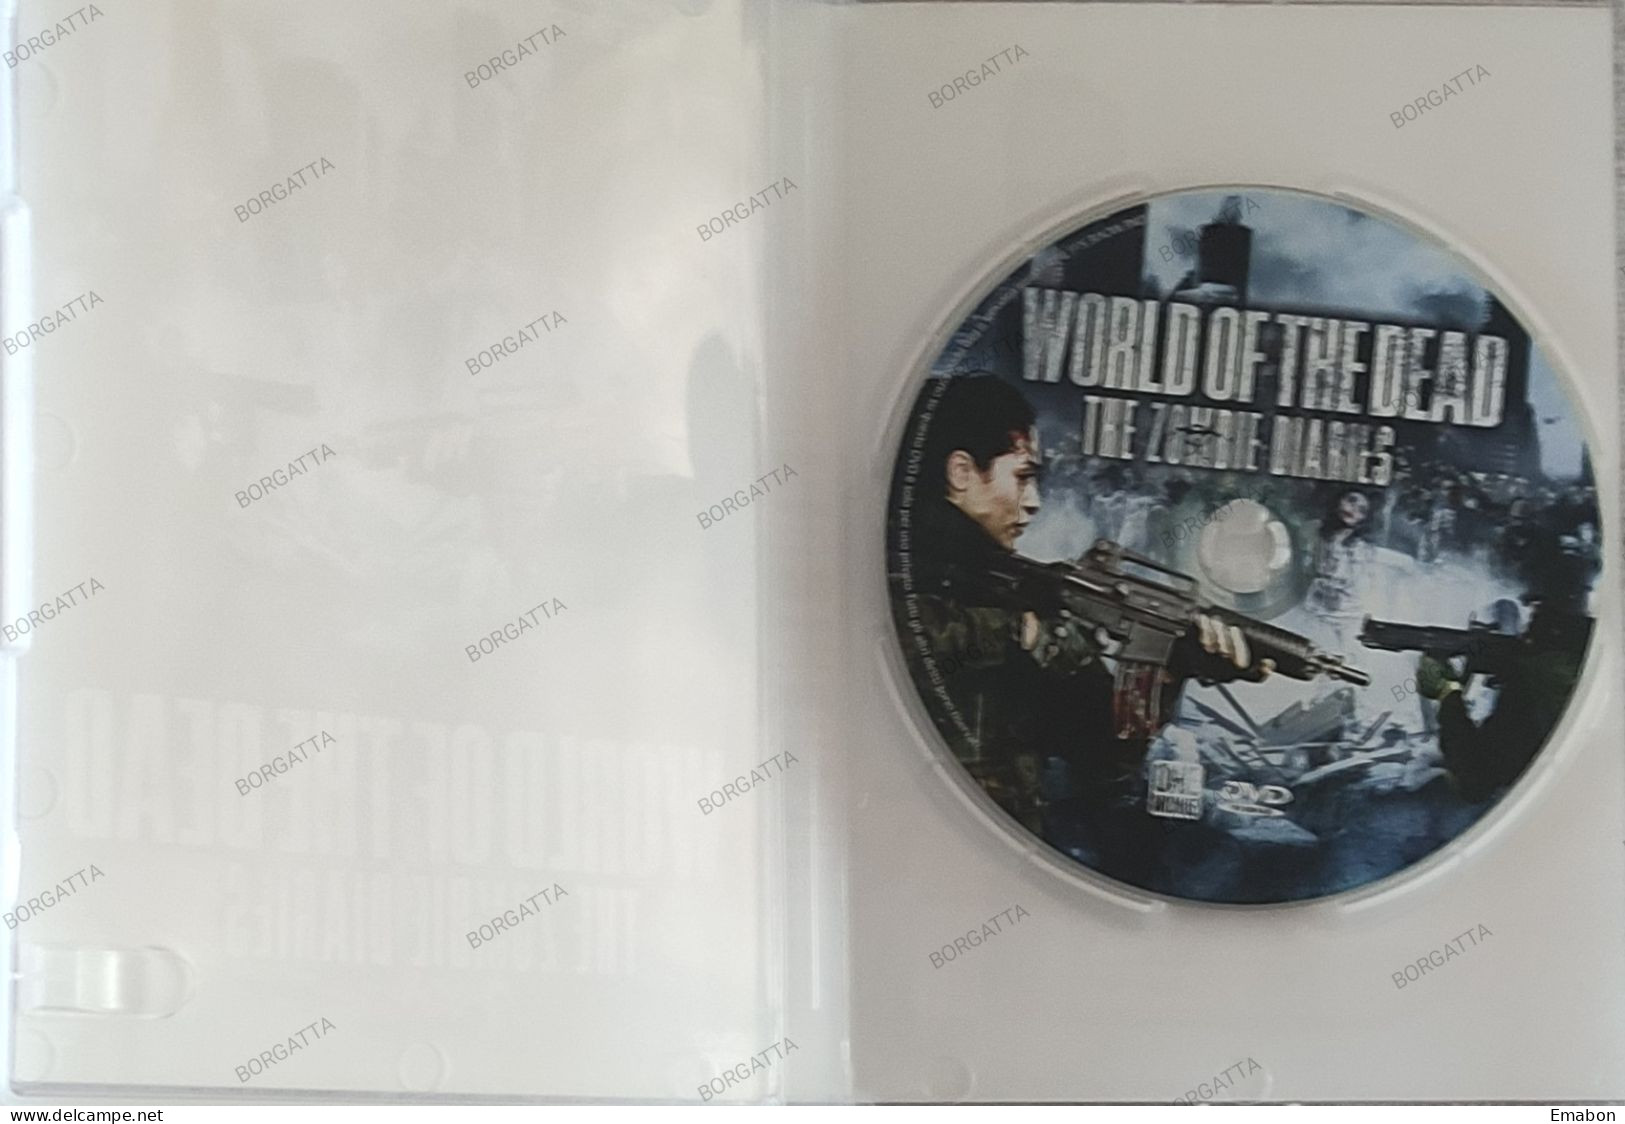 BORGATTA - HORROR - Dvd WORLD OF THE DEAD THE ZOMBIE DIARIES - PAL 2 - 01DISTRIBUTION - USATO In Buono Stato - Horror